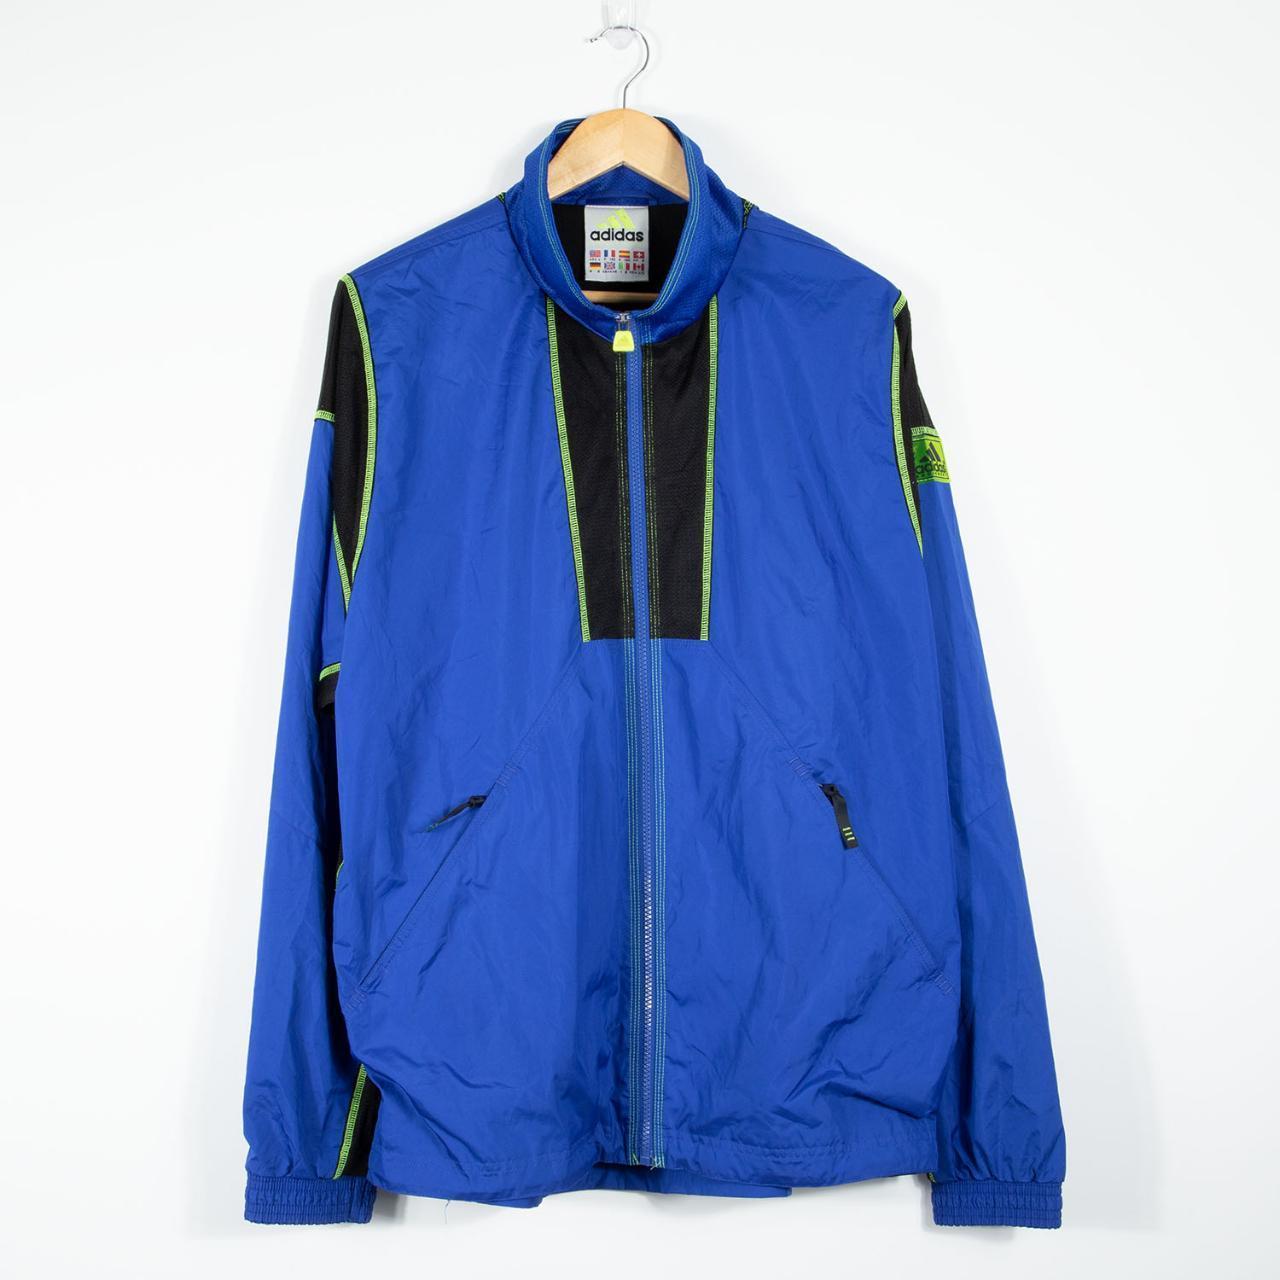 adidas Equipment EQT 1995 Track Jacket - Blue Black... - Depop